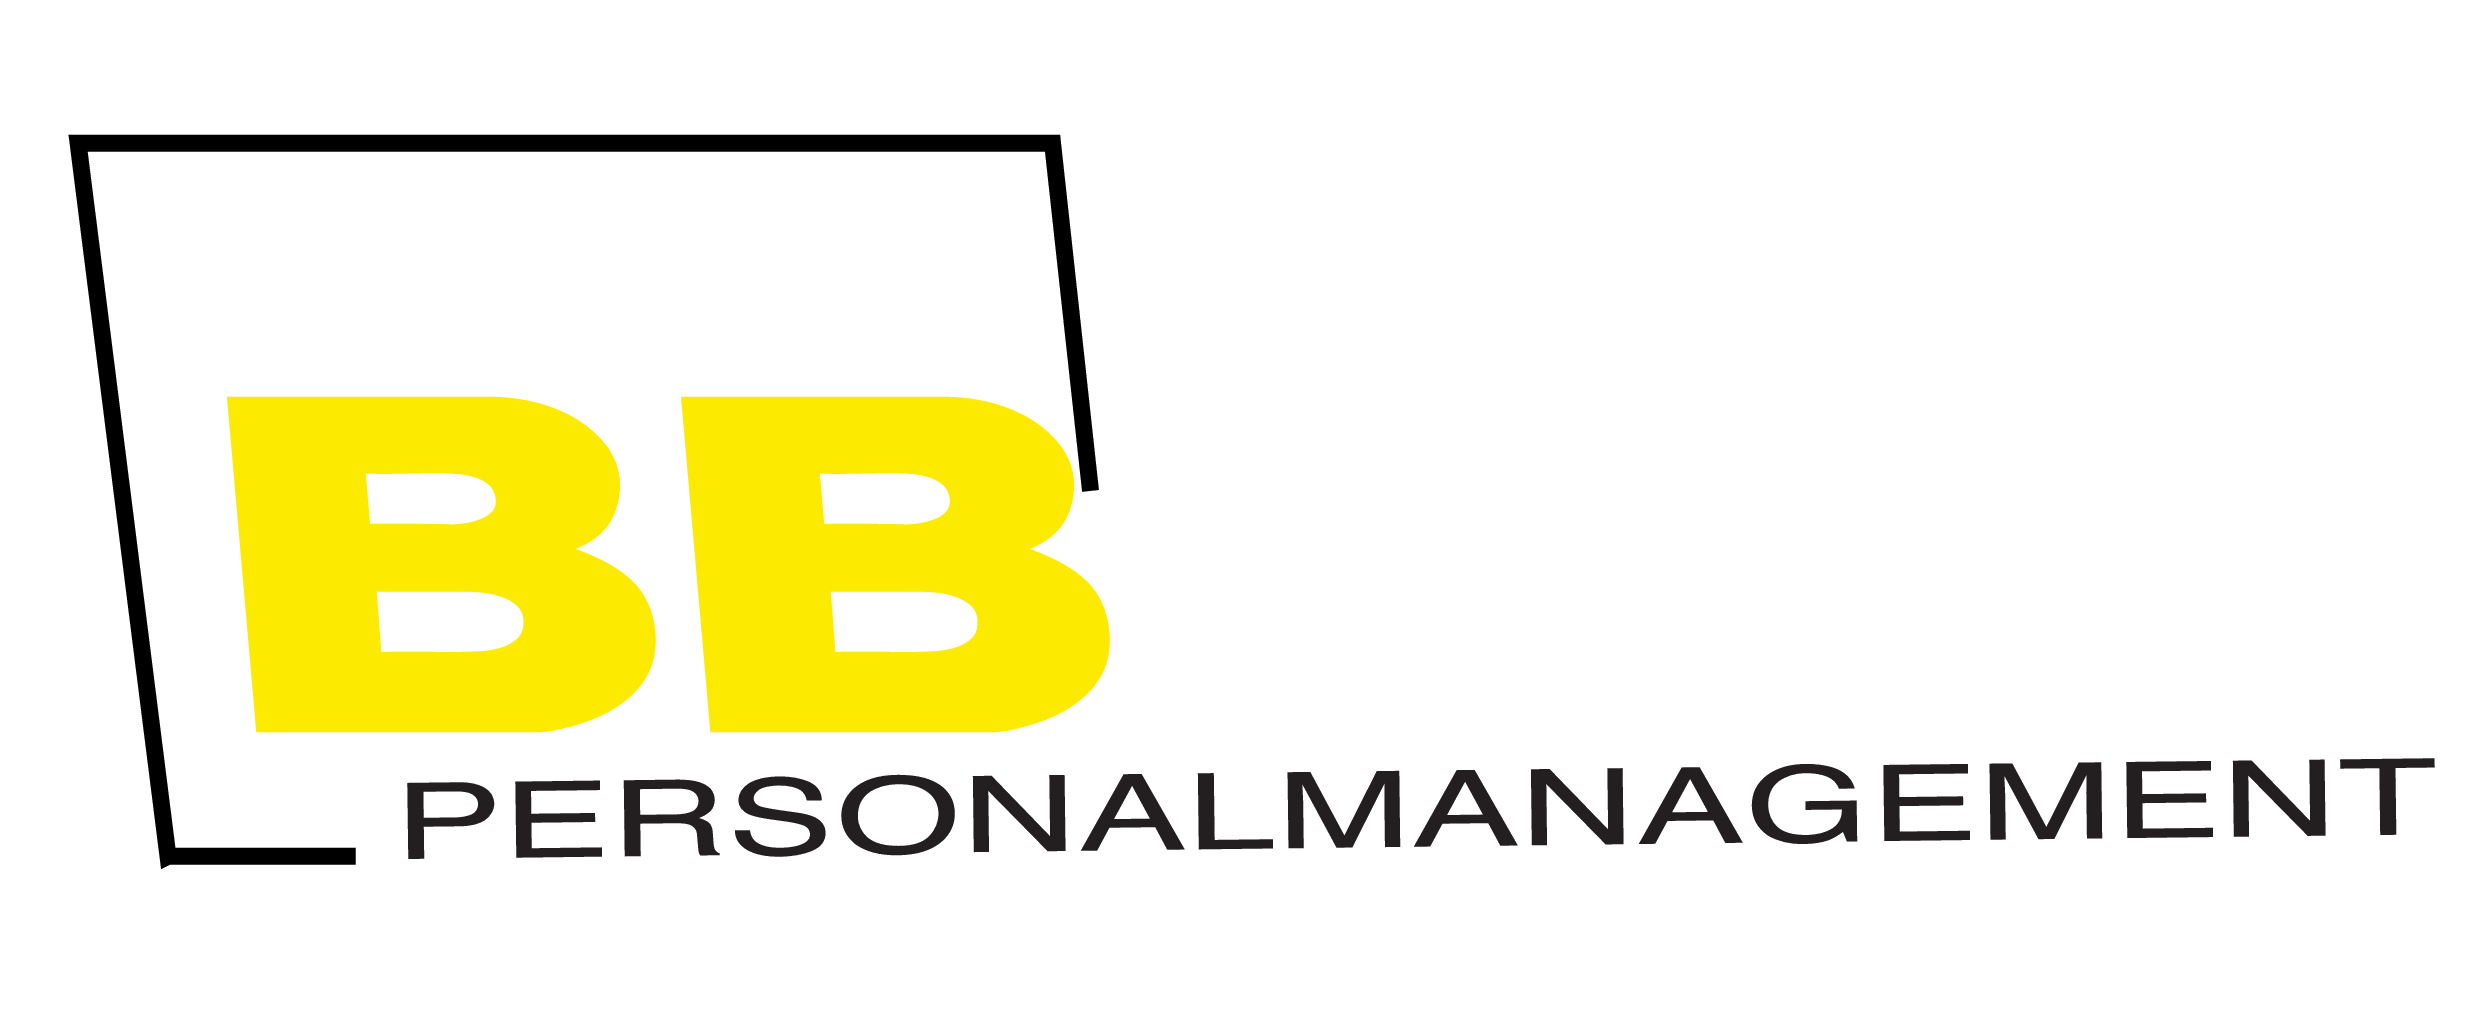 BB Personalmanagement